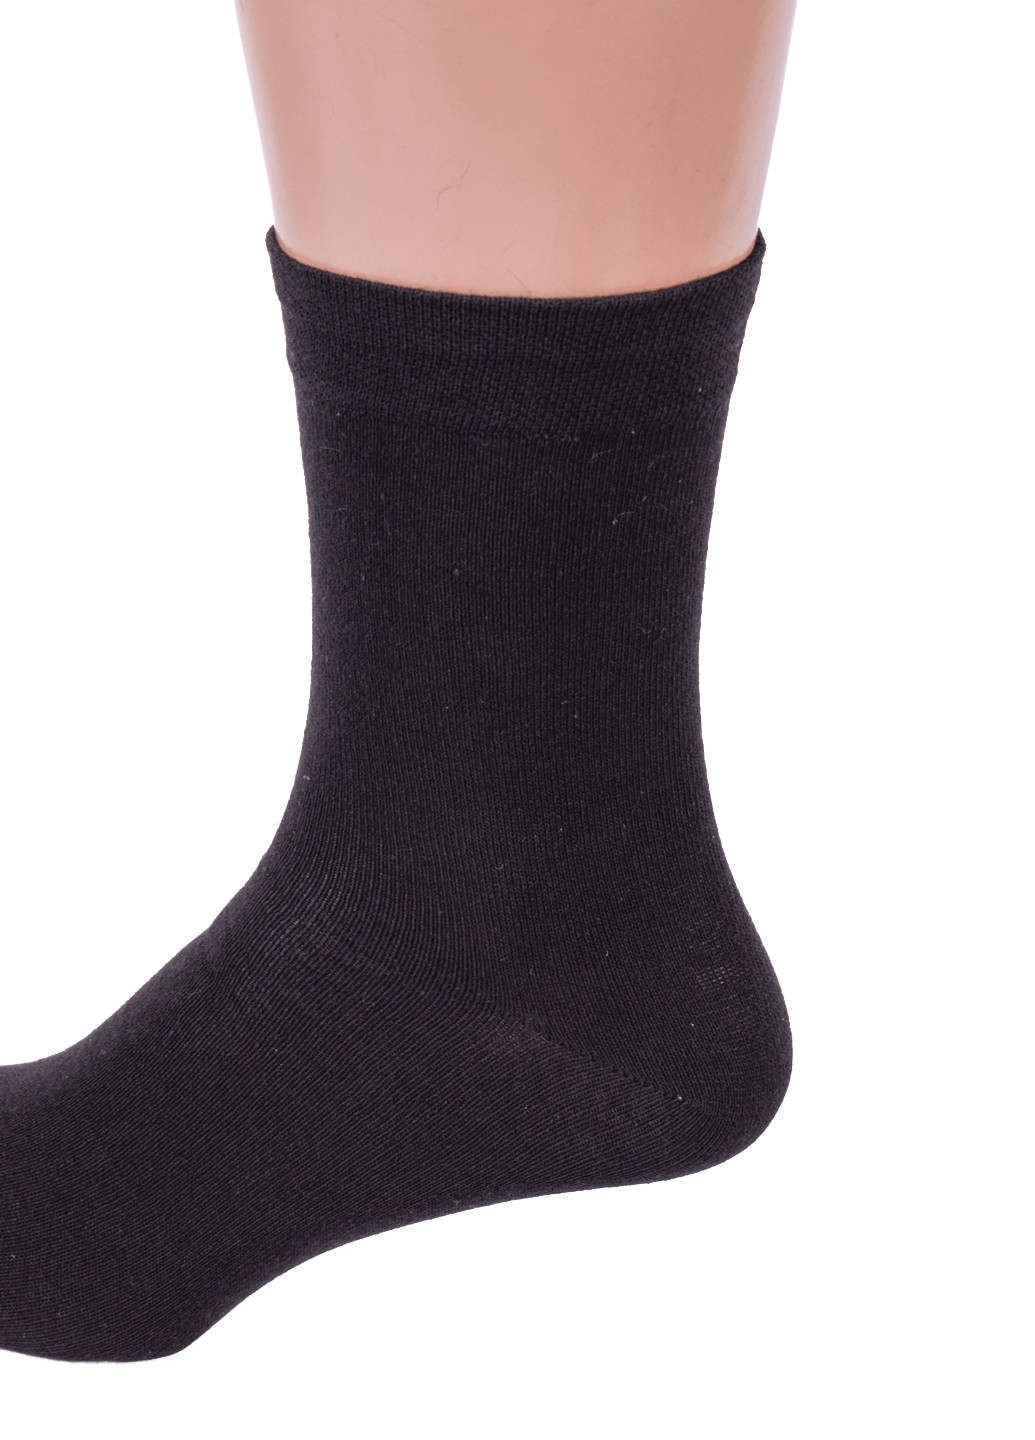 Шкарпетки чоловічі чорні Milano AV001-17. Упаковка 12 пар. Розмір 41-45. Dukat (215474760)